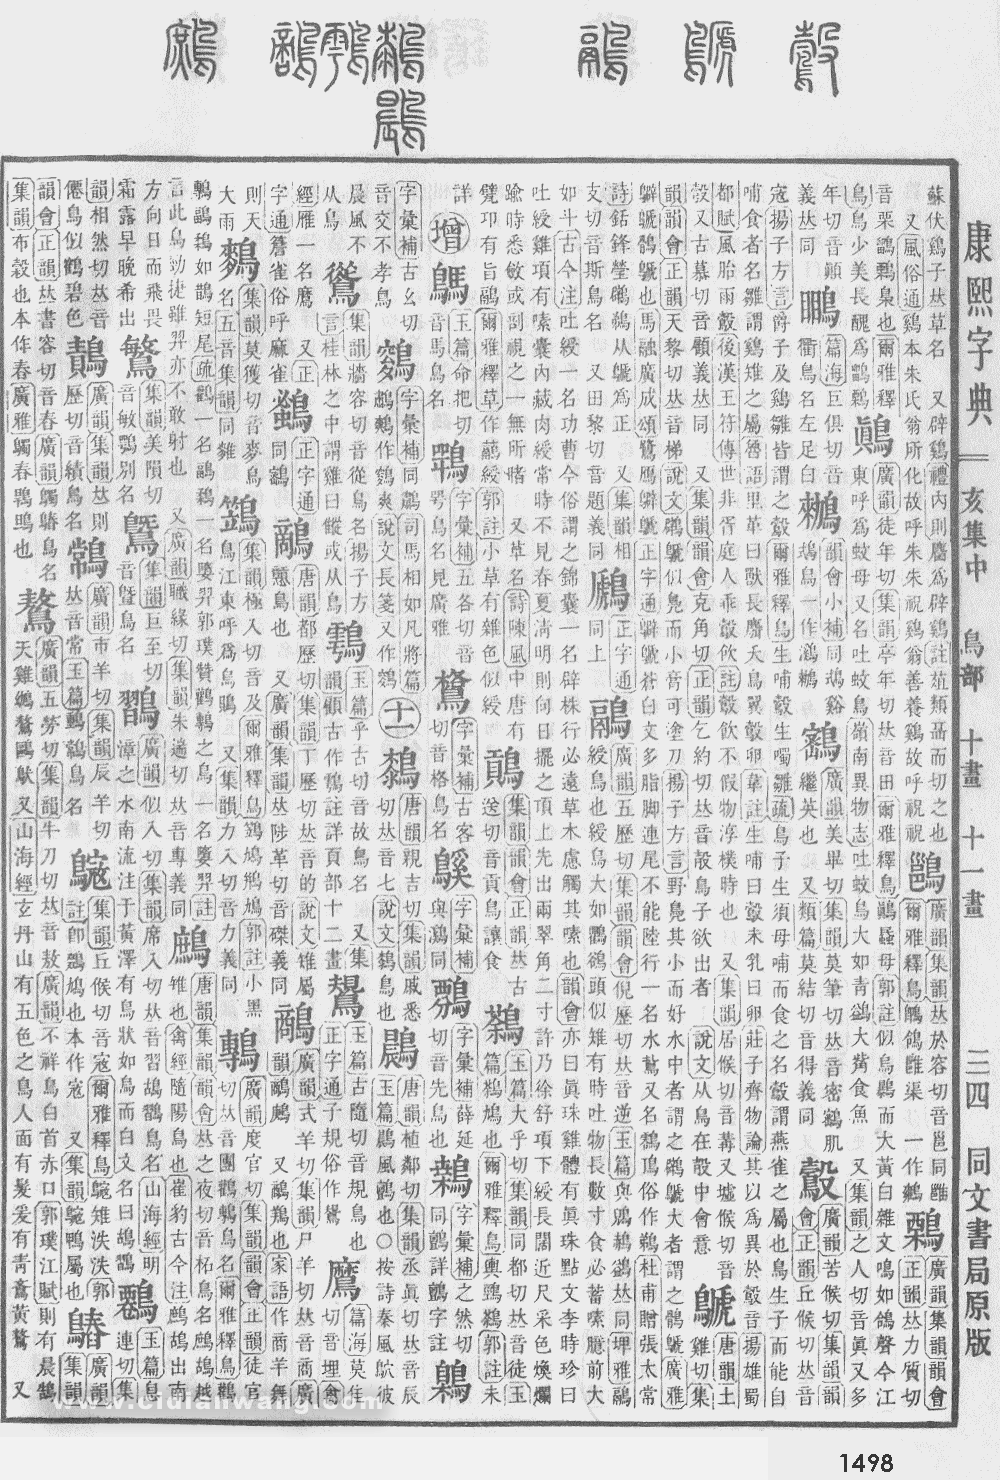 康熙字典掃描版第1498頁